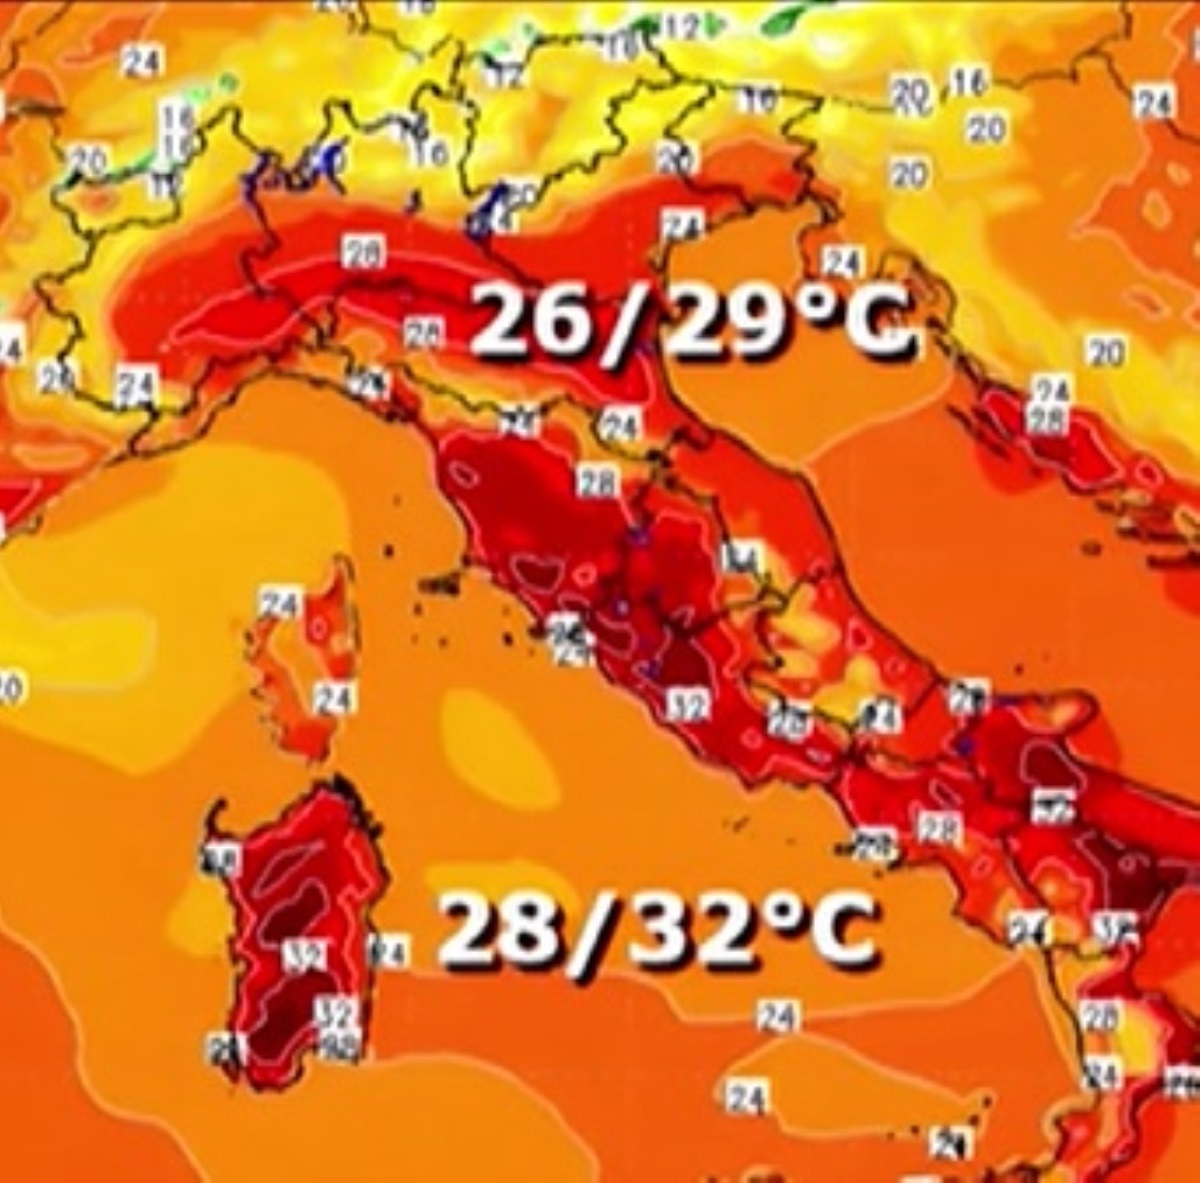 meteo italia arriva nerone temperature sopra 40